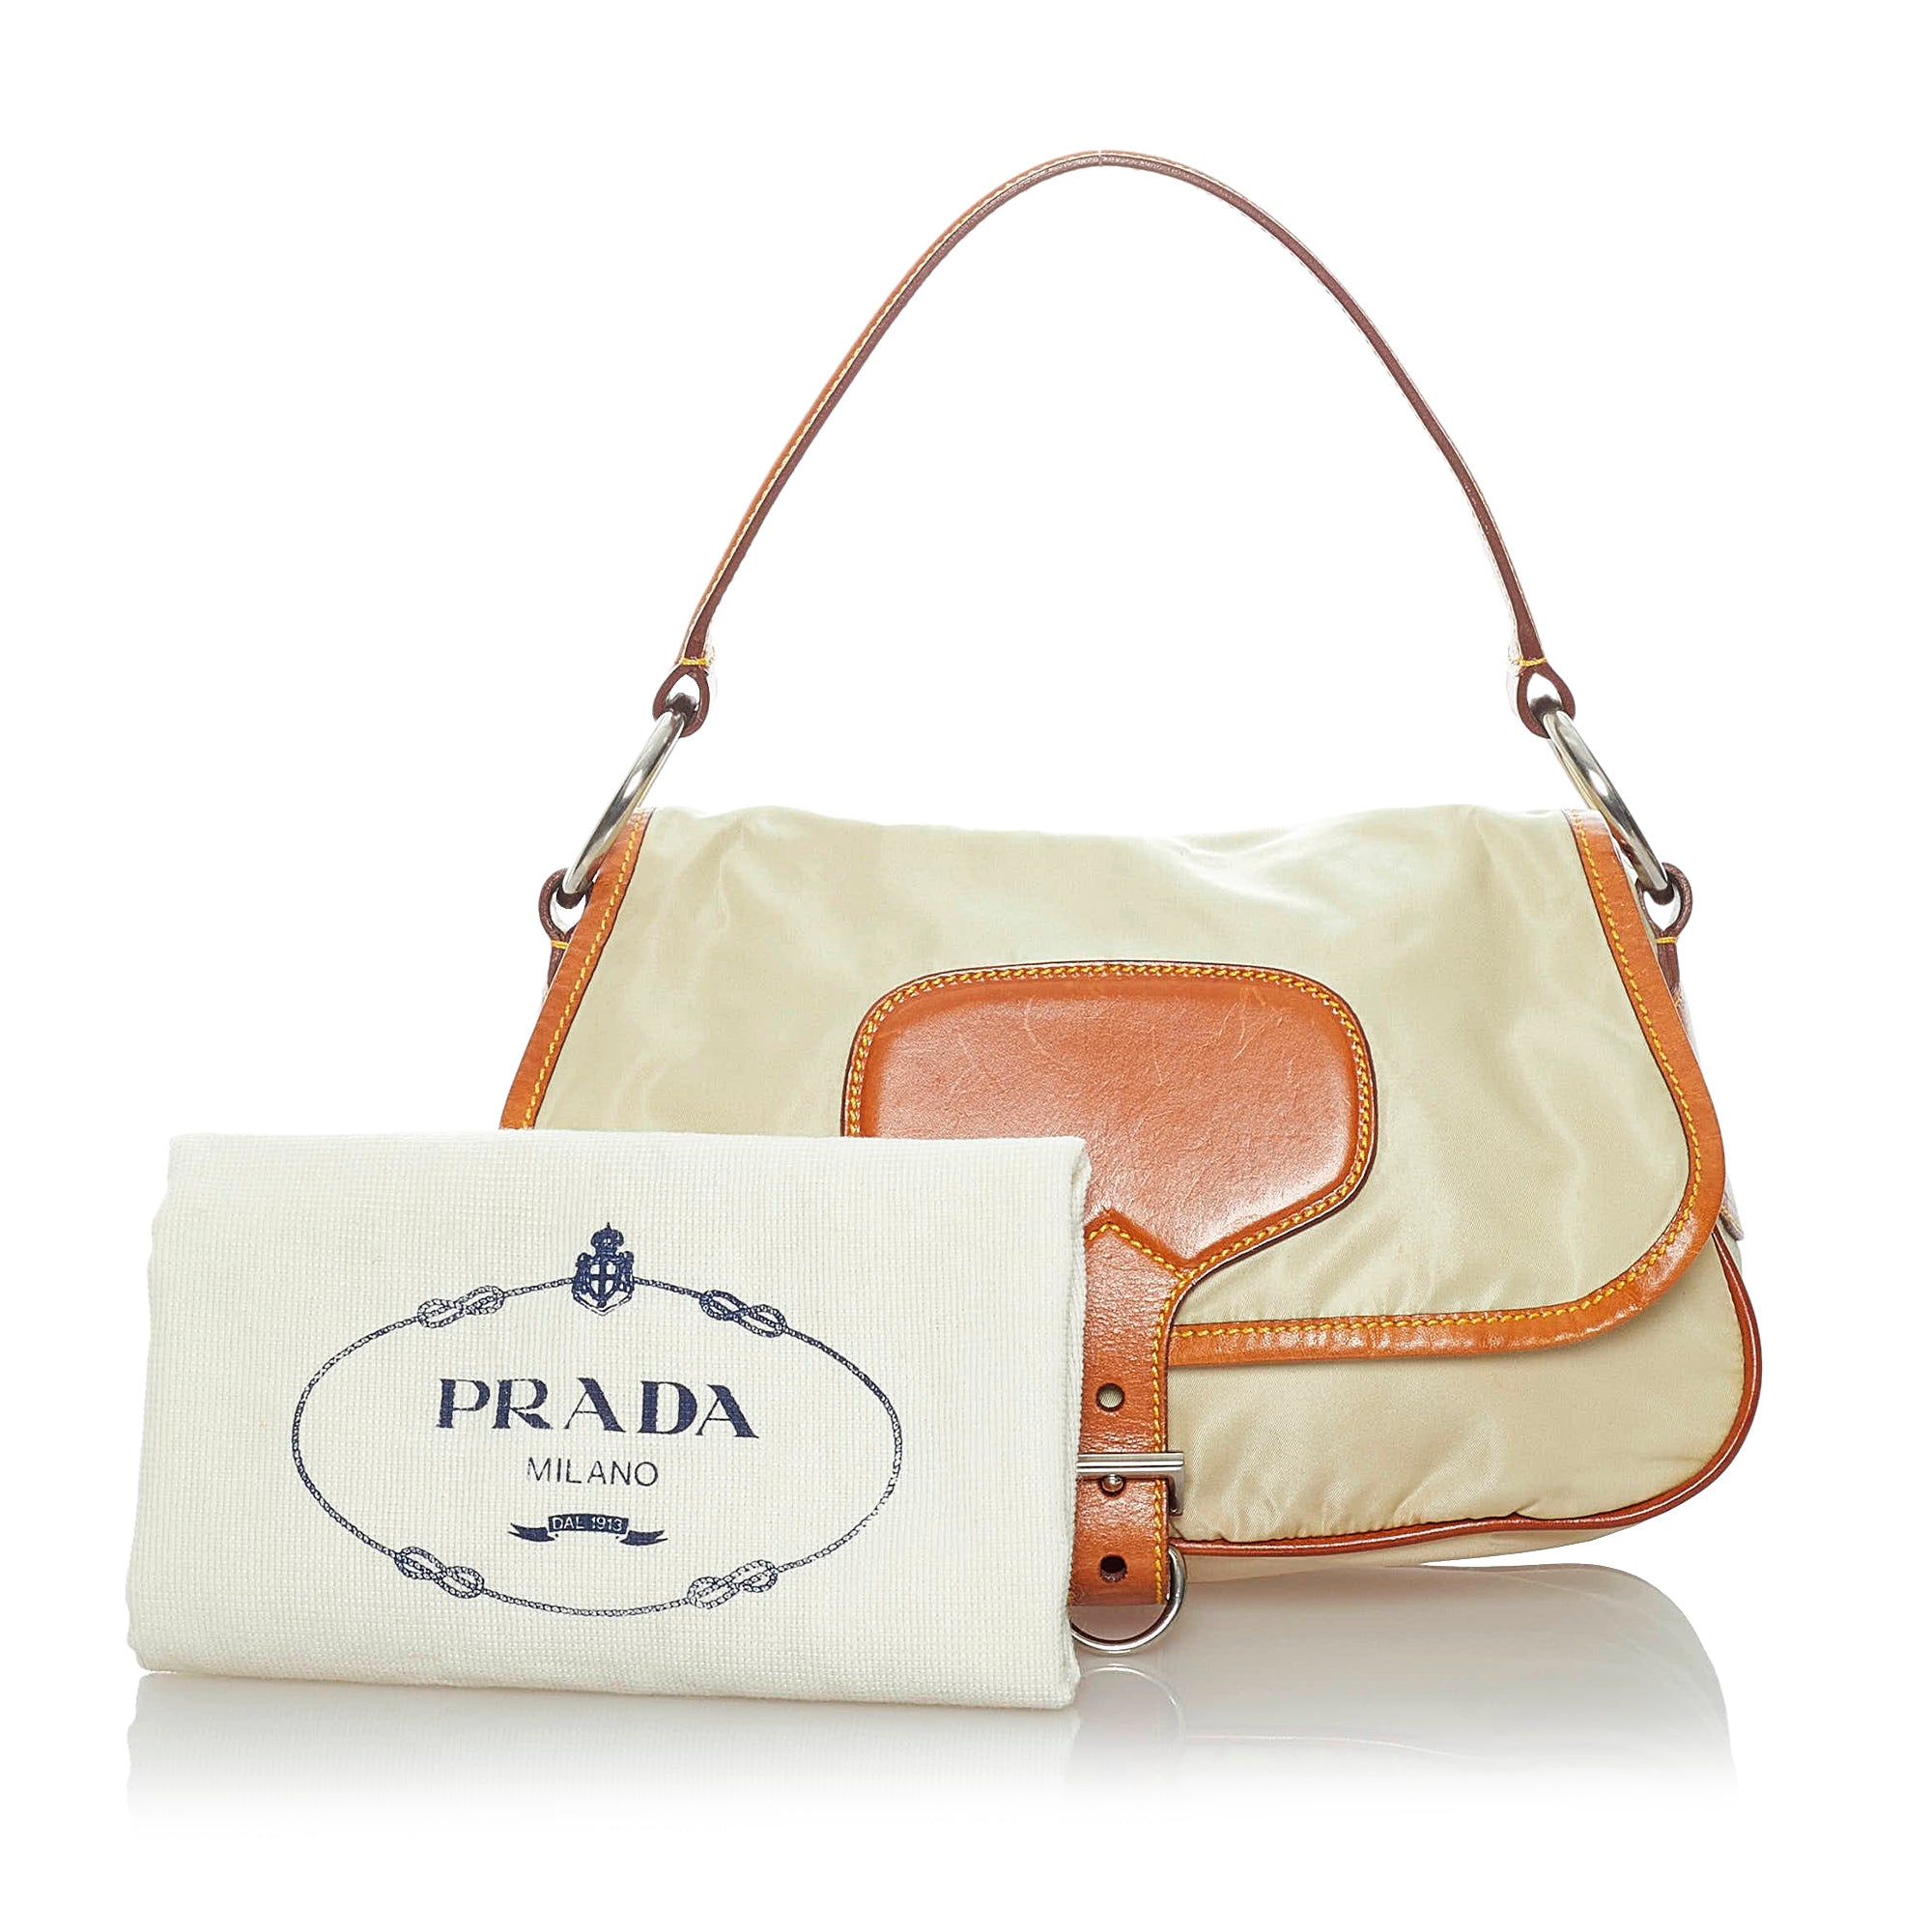 Vintage Prada Milano Dal 1913 handbag